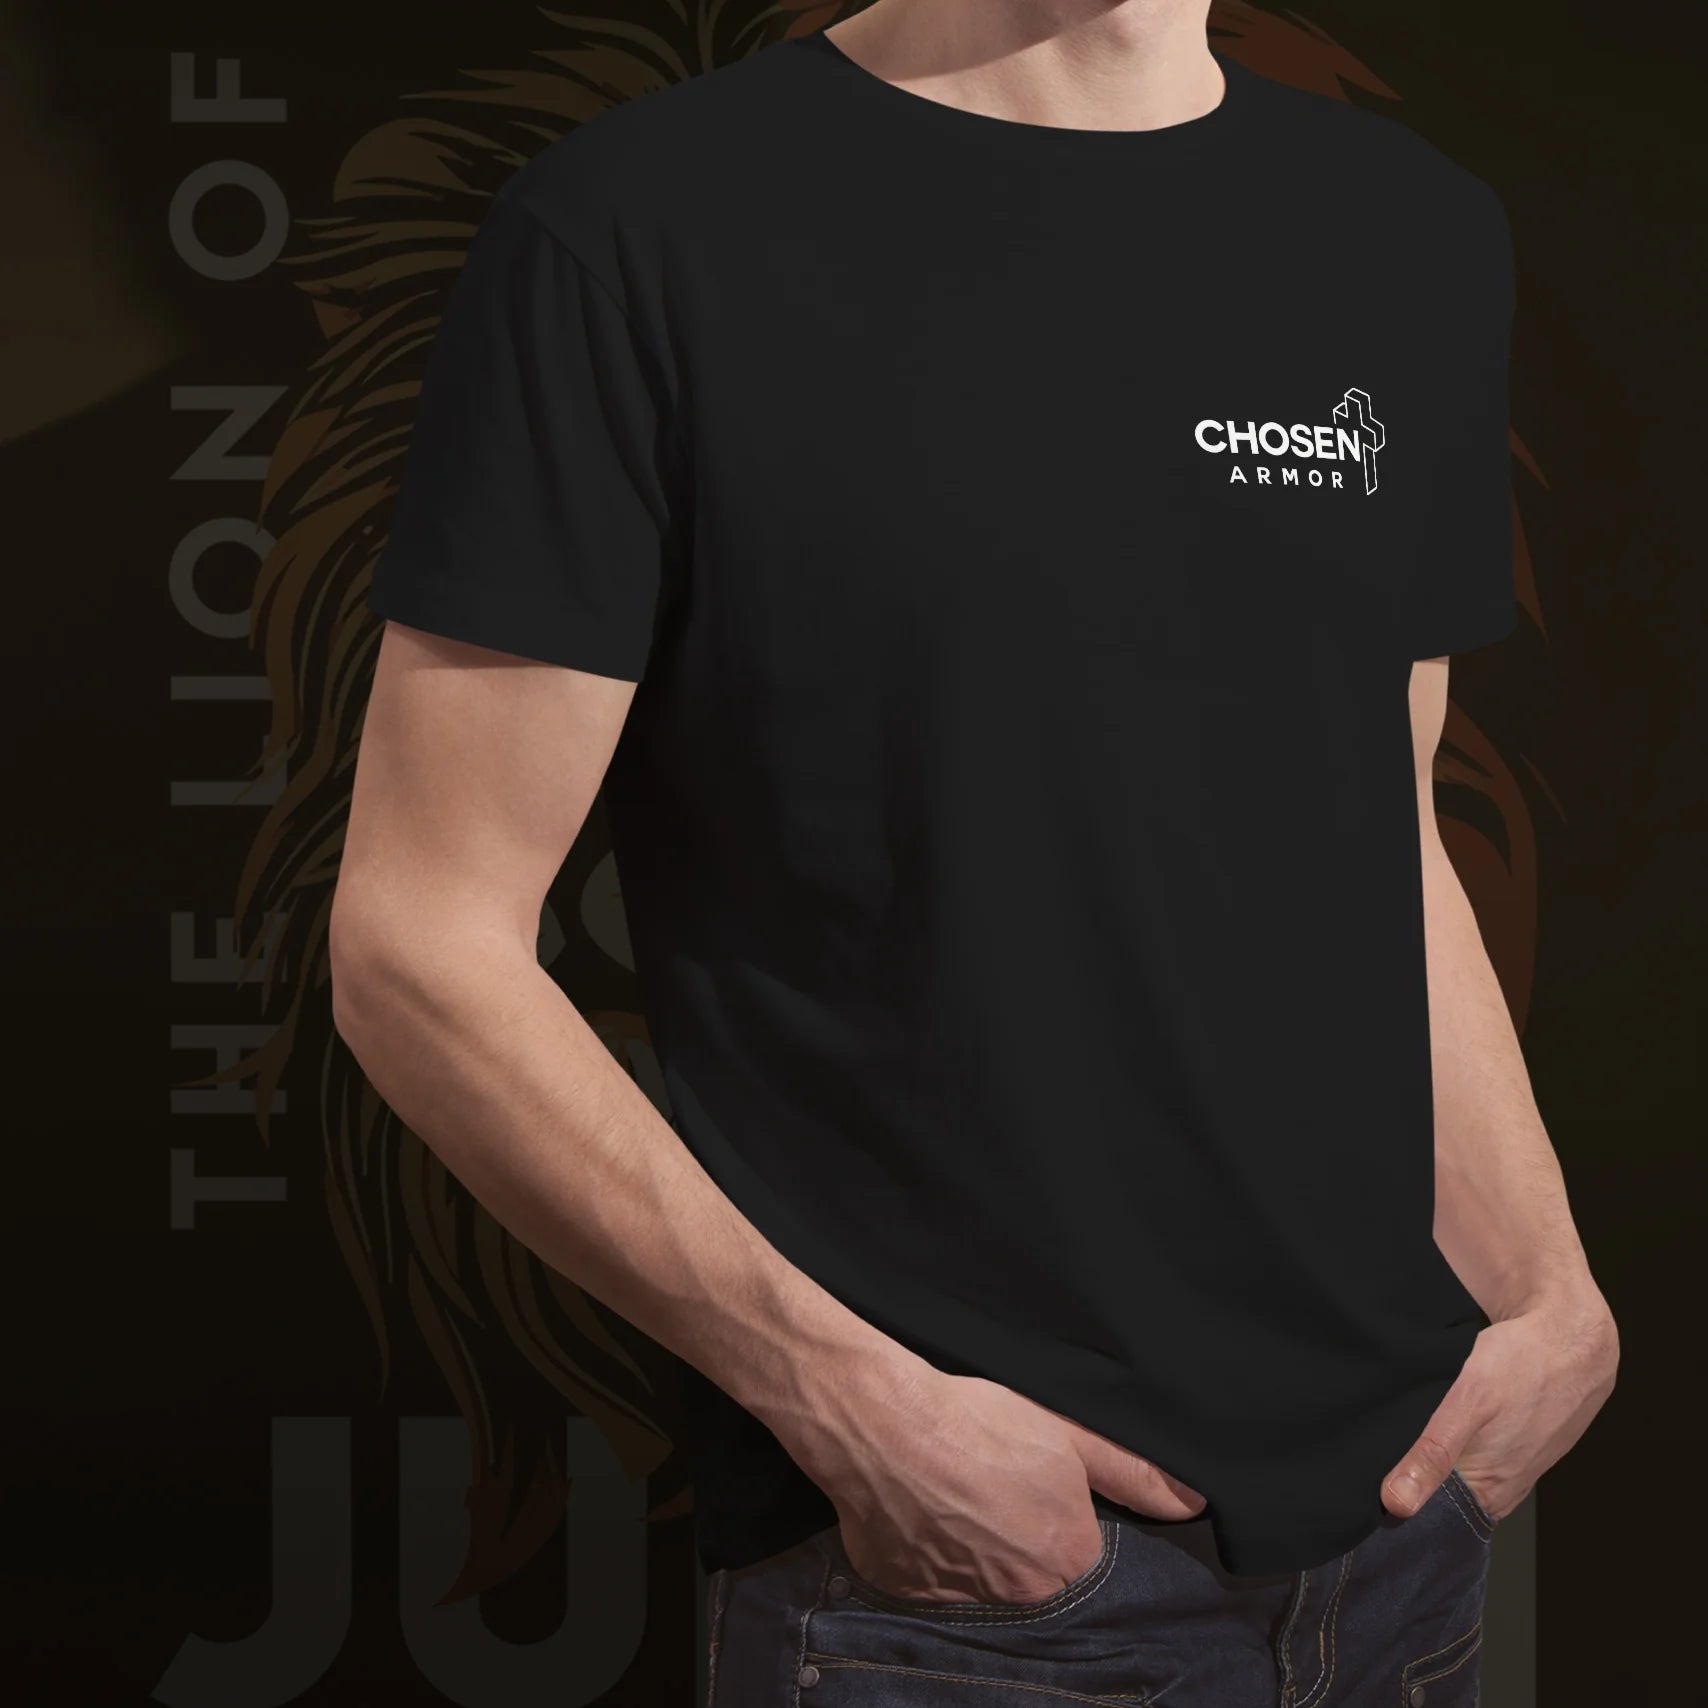 The Lion Of Judah | Unisex t-shirt